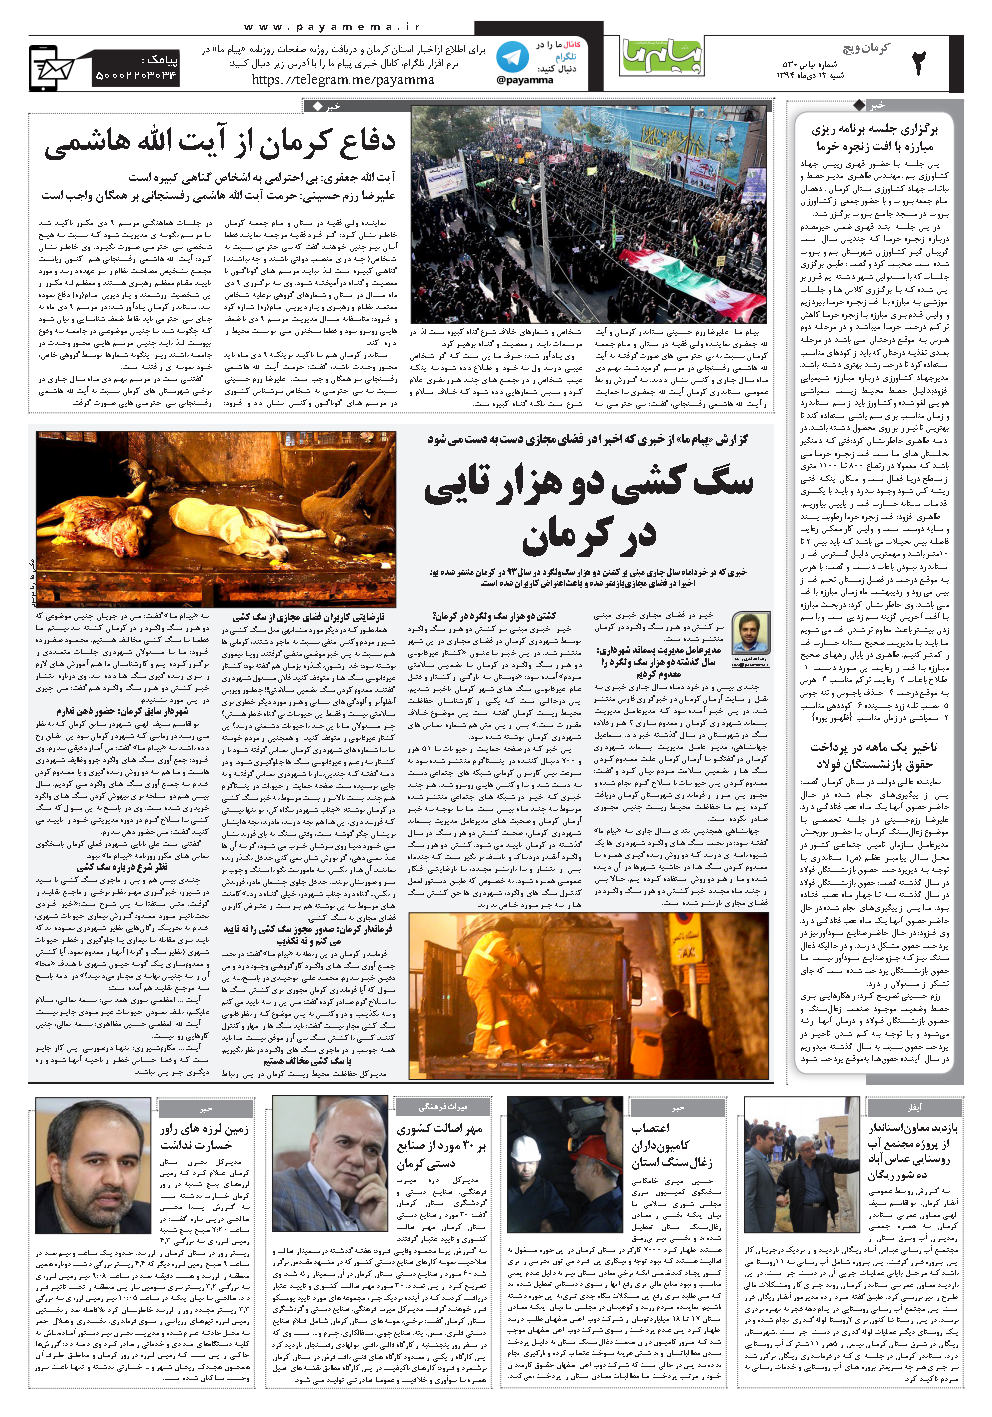 صفحه کرمان ویچ شماره 530 روزنامه پیام ما